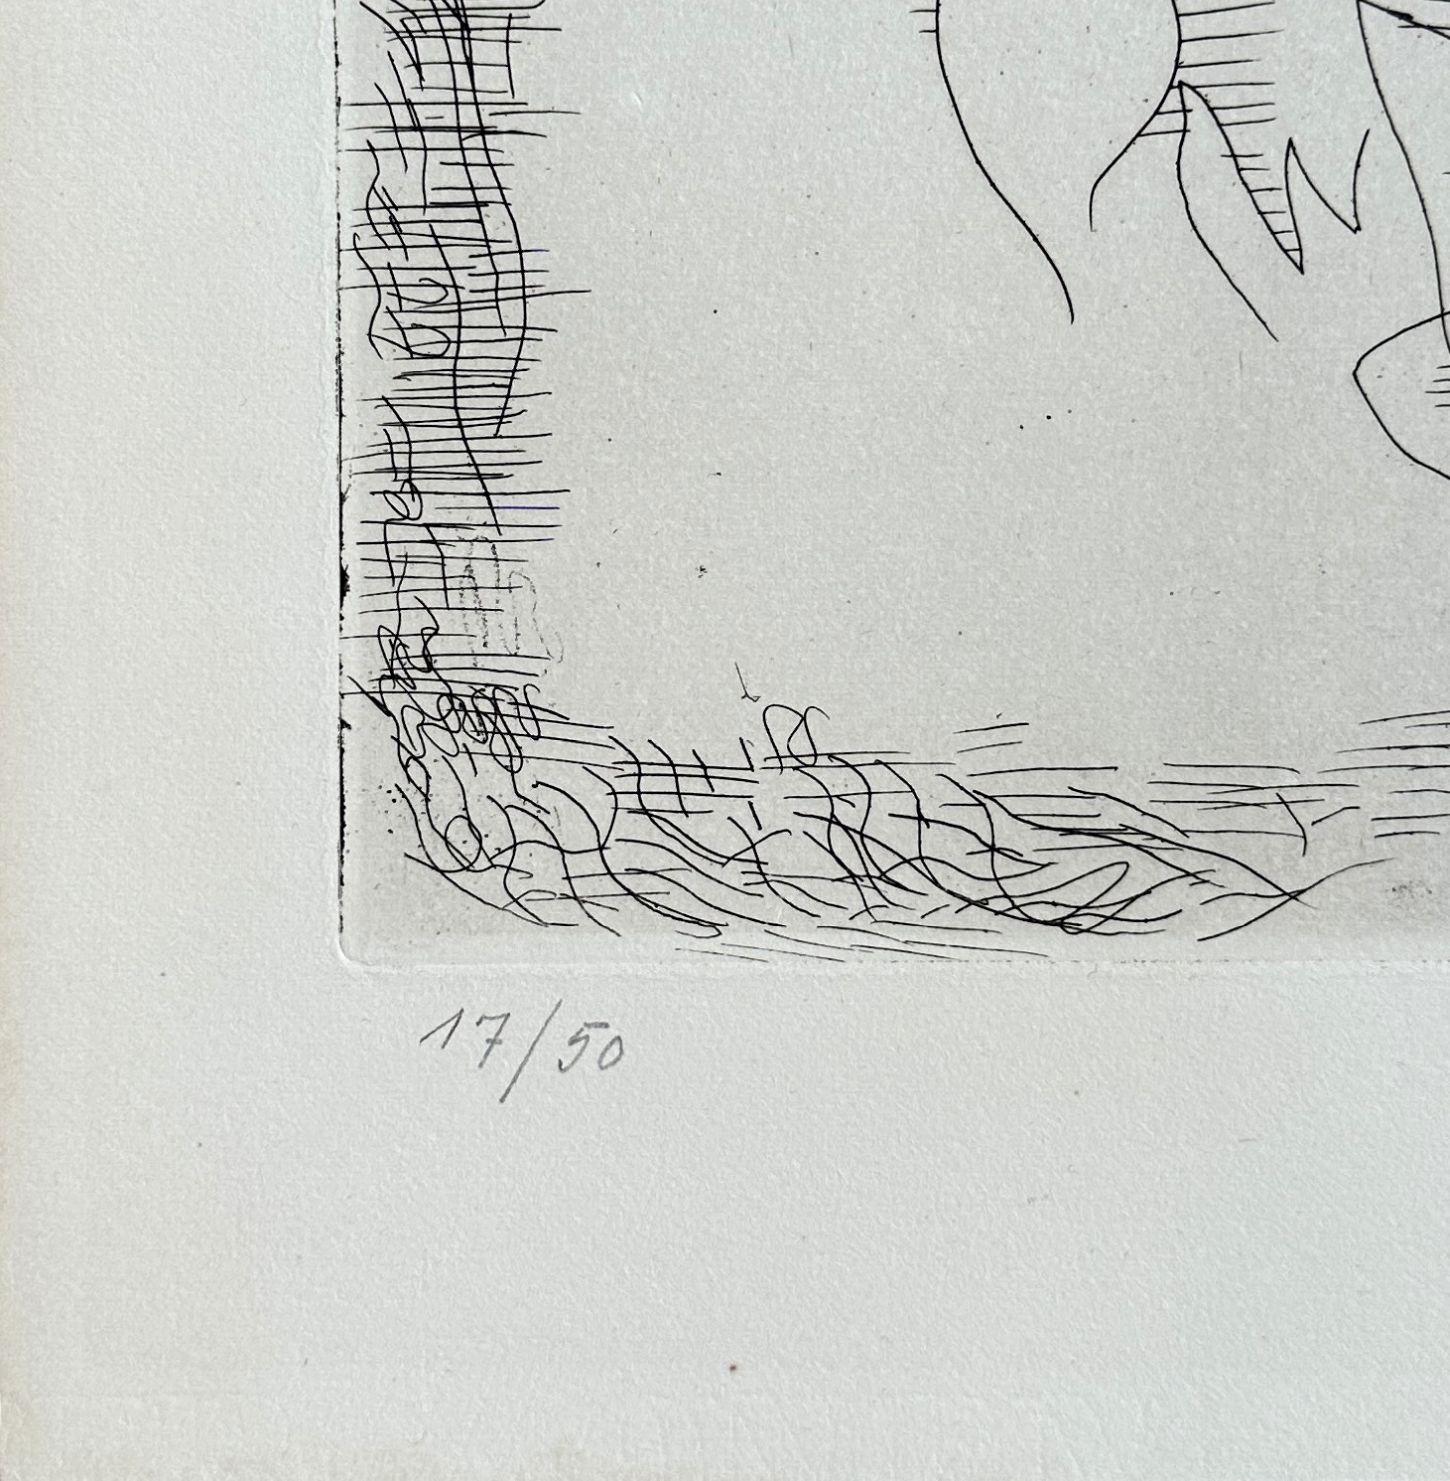 Georges Braque (1882-1963)
Hesiods Theogonie : Artémis

Original-Radierung, 1932
Handsigniert mit Bleistift
Nummeriert /50 Exemplare
Auf Hollande Vellum im Format 49 x 38,5 cm (ca. 19 x 15 Zoll)
Herausgegeben von Vollard und gedruckt von